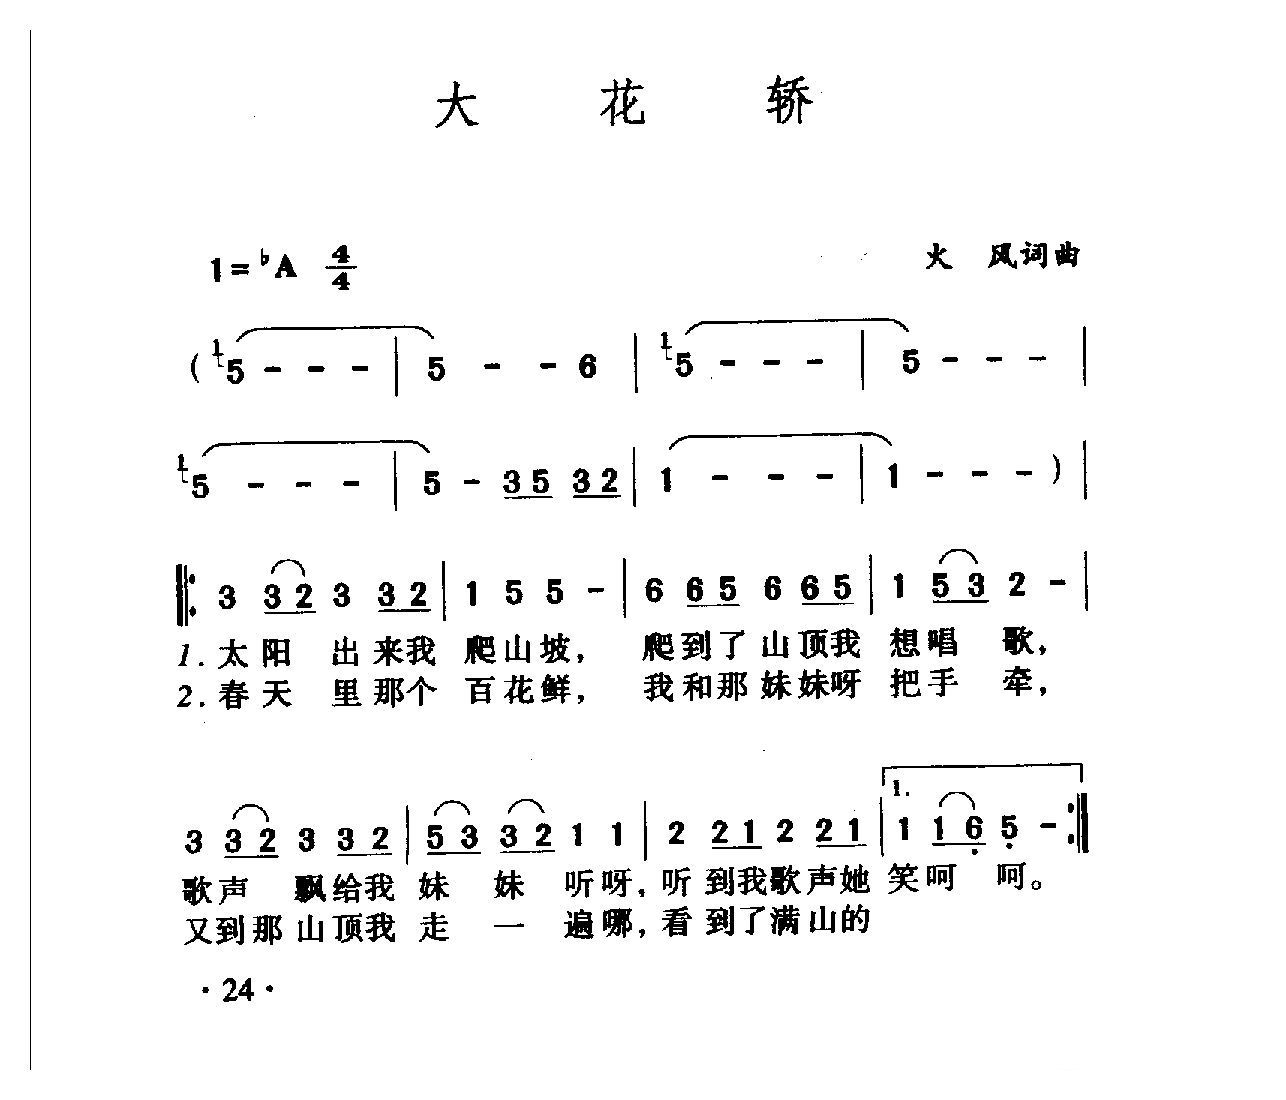 中国名歌[大花轿]乐谱